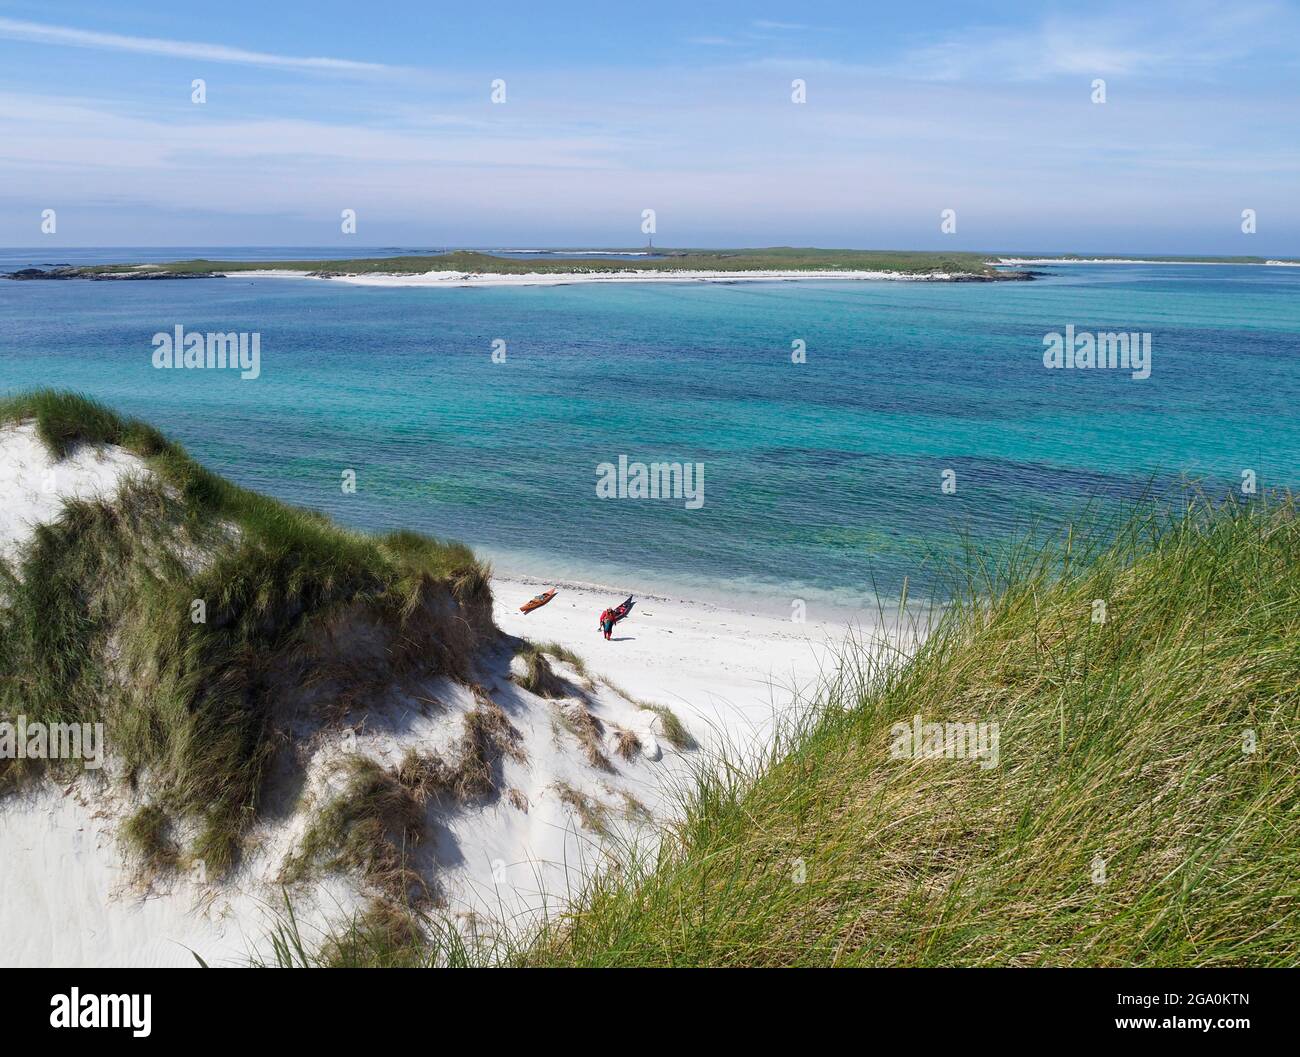 Sand dunes and beach, Ceann ear, Monach isles, Outer Hebrides, Scotland Stock Photo